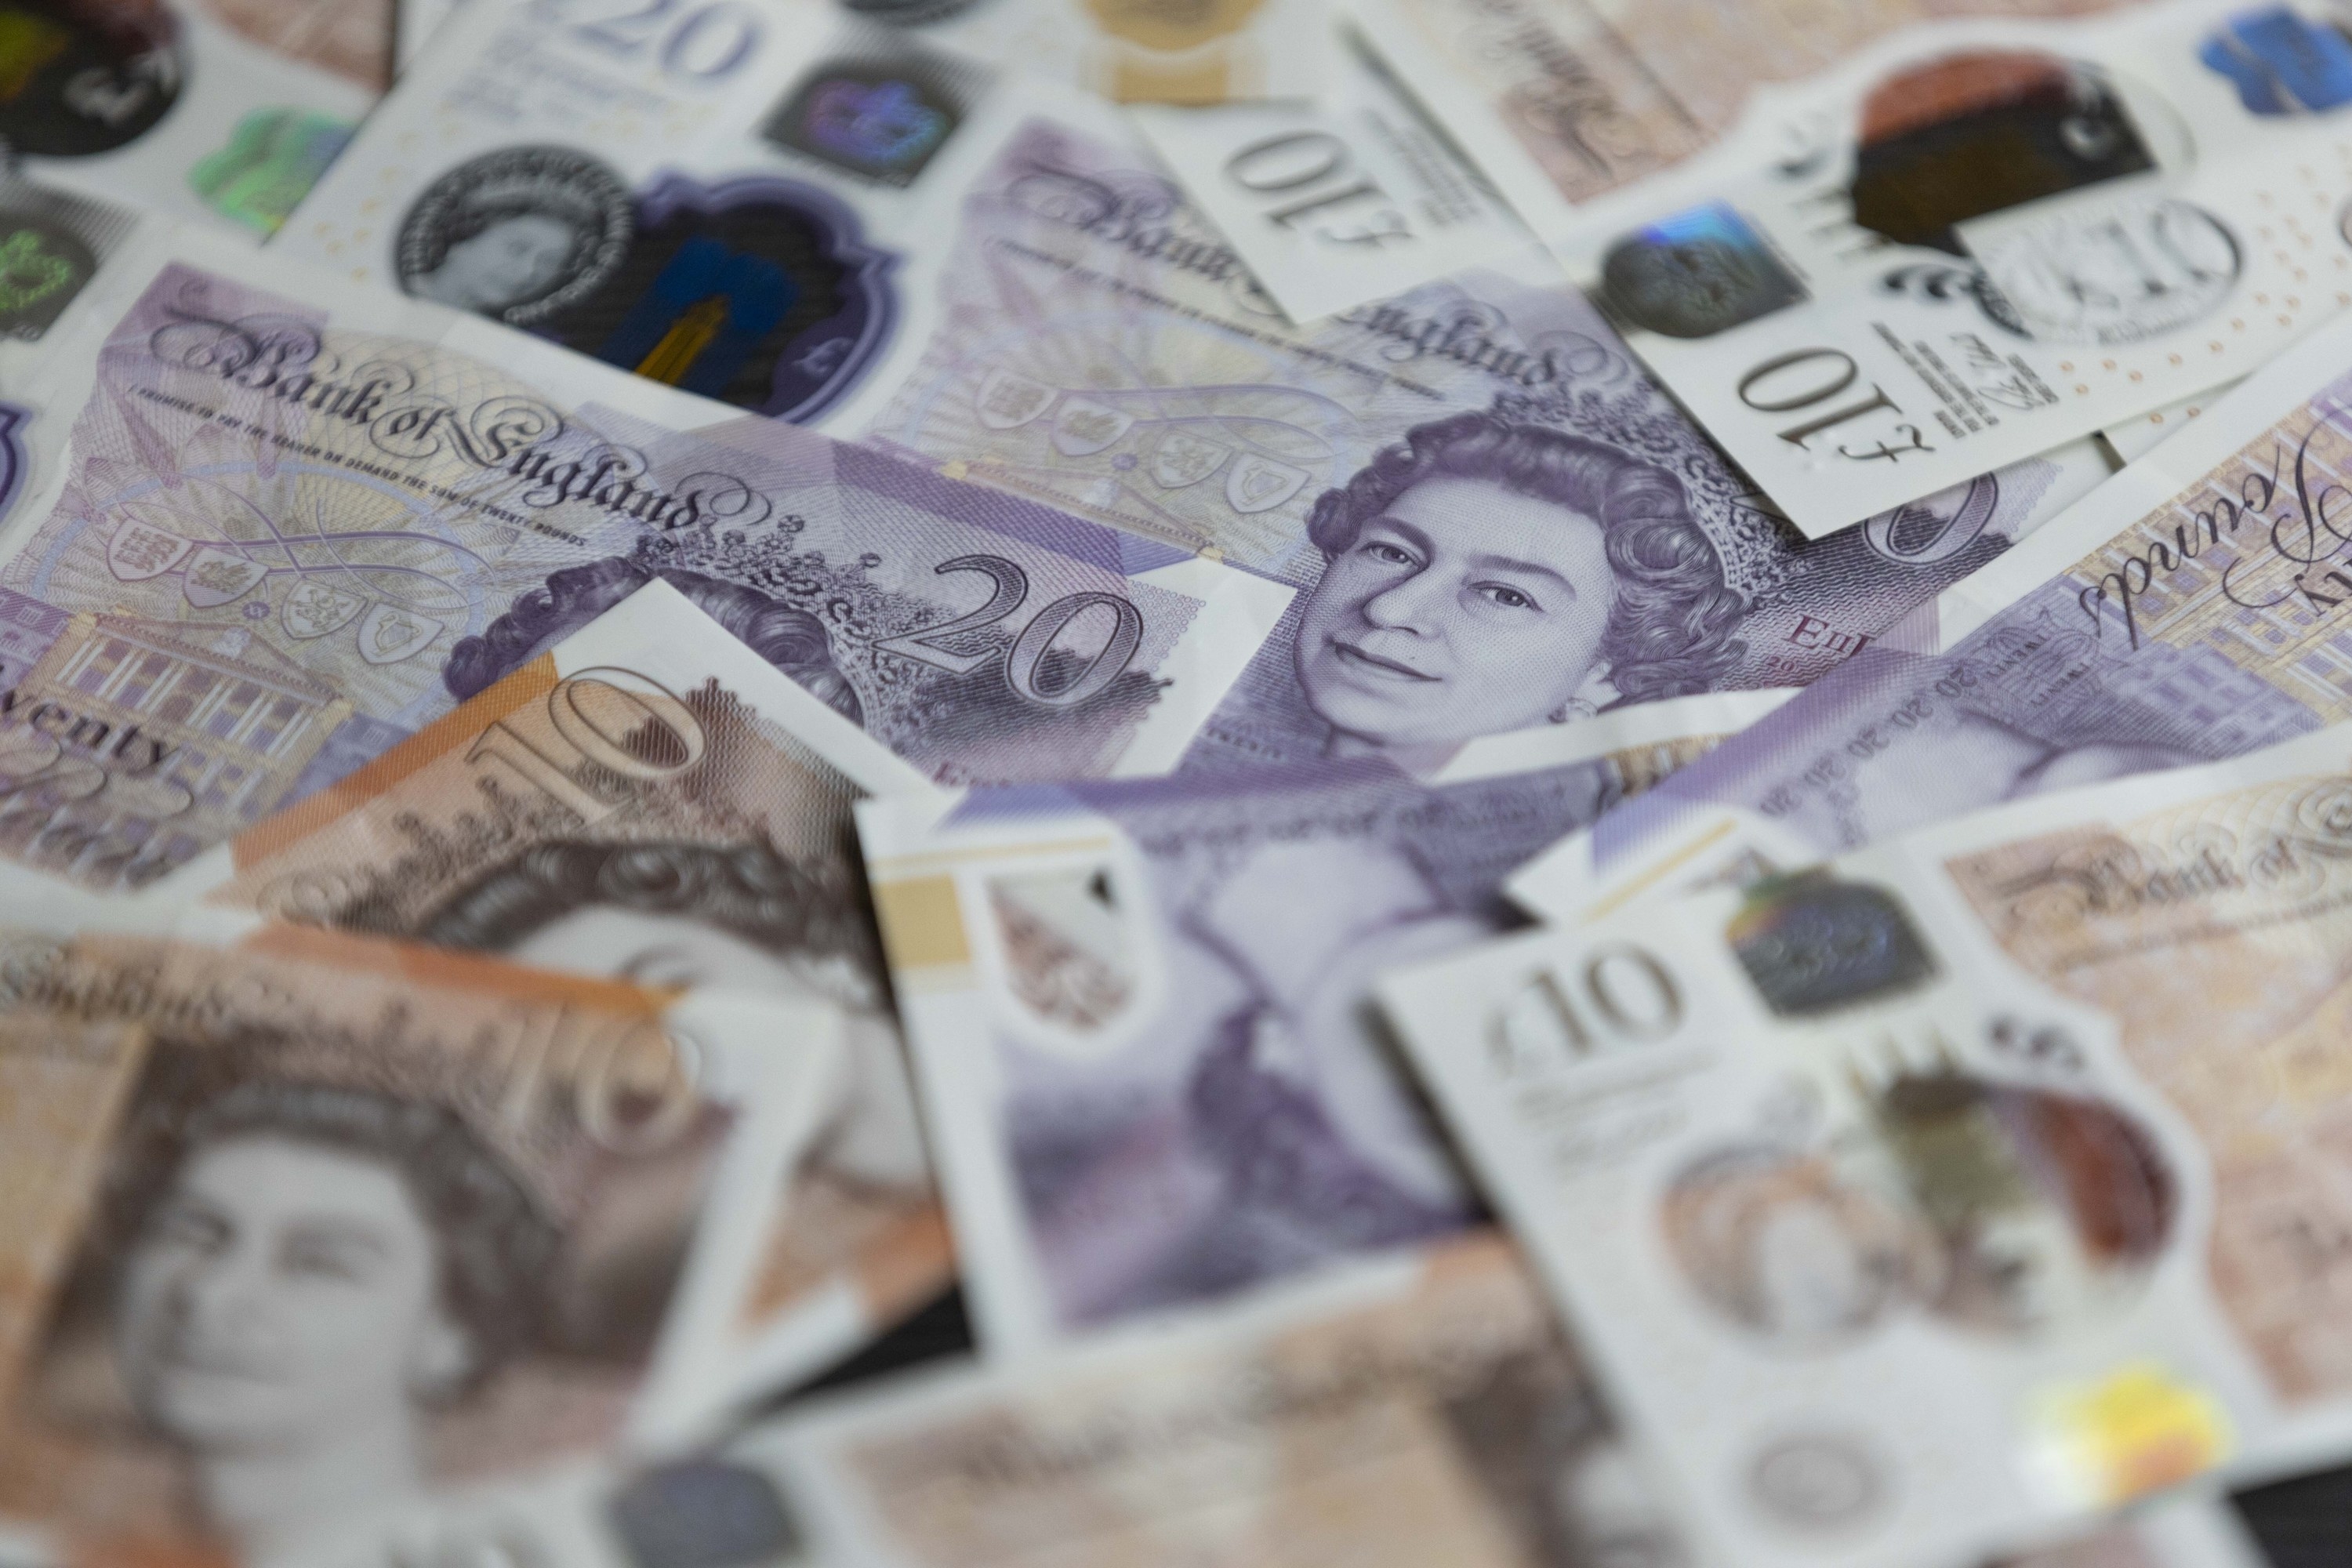 British pound banknotes with Queen Elizabeth II